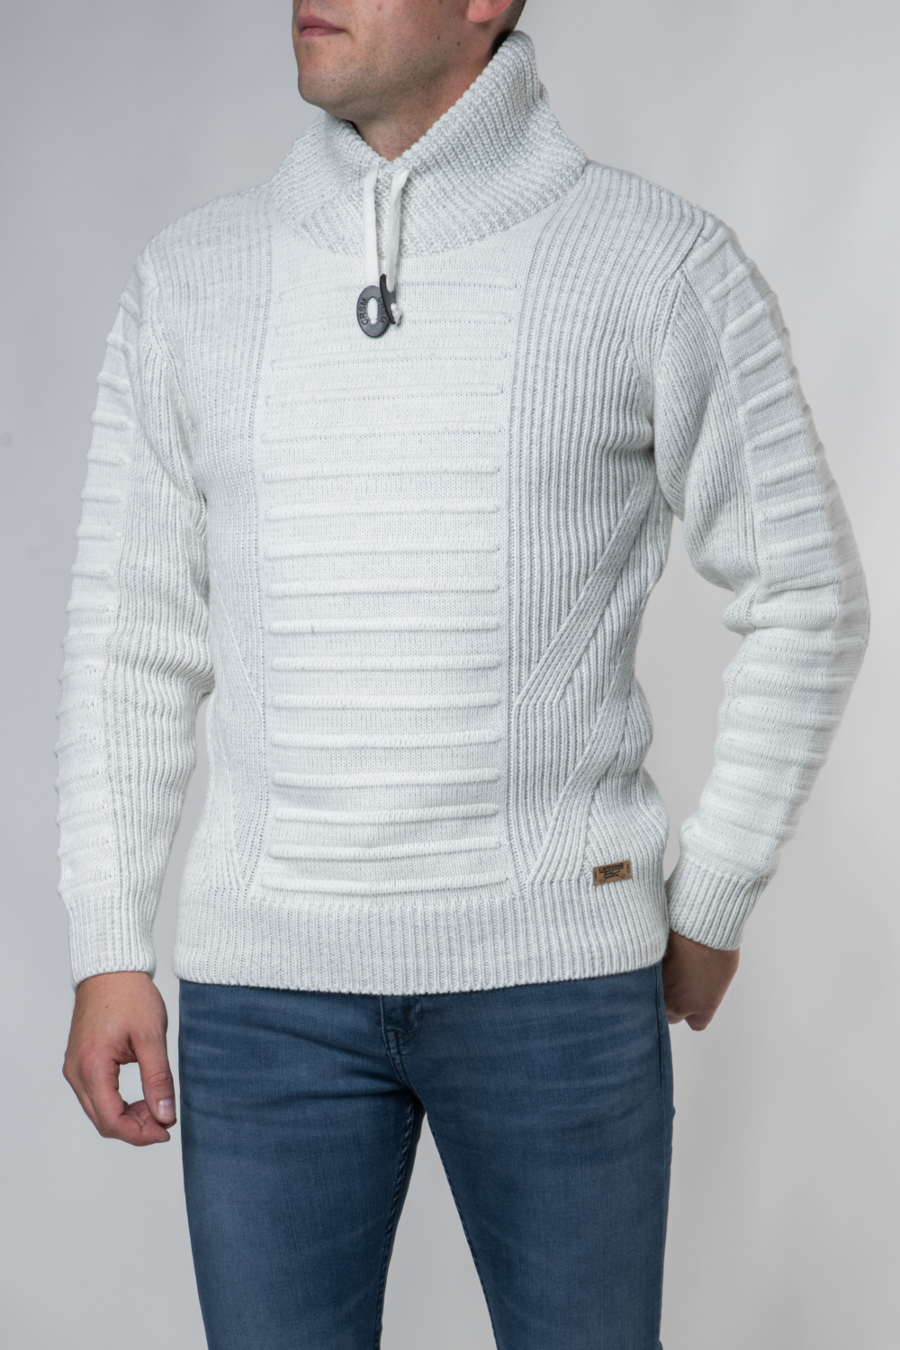 Moški pulover CA-7654, bel